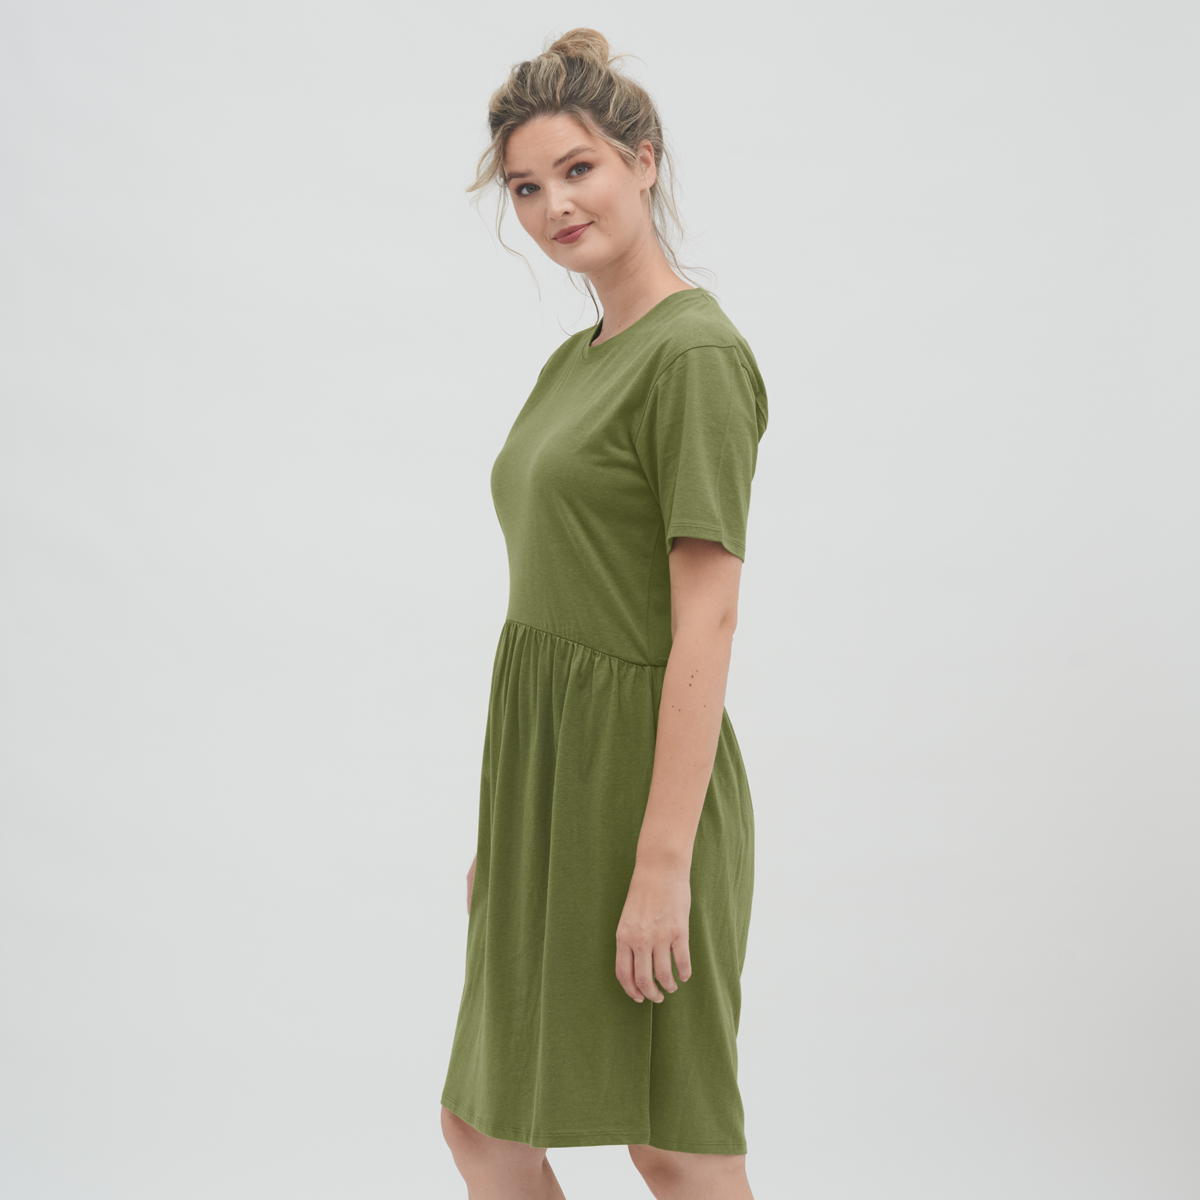 Green Women Dress